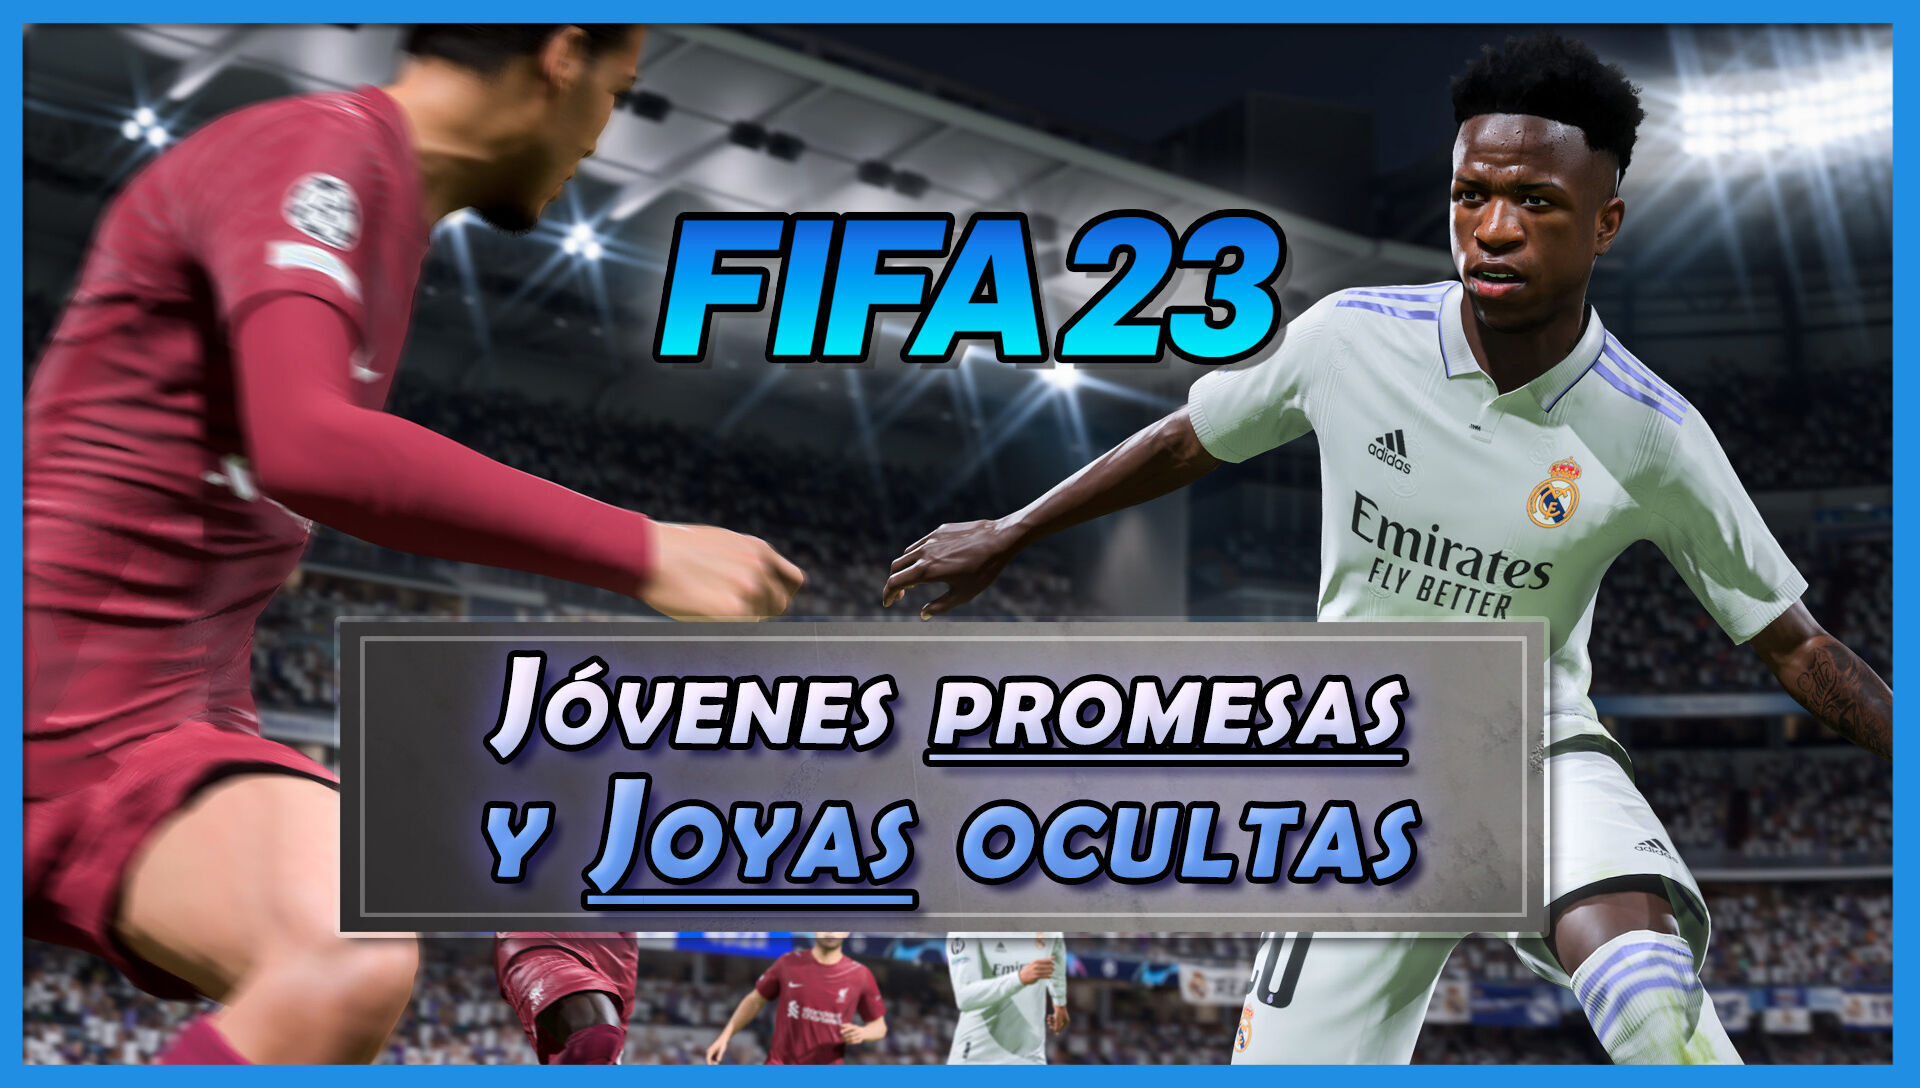 FIFA 23: Los MEJORES jóvenes promesas y joyas ocultas